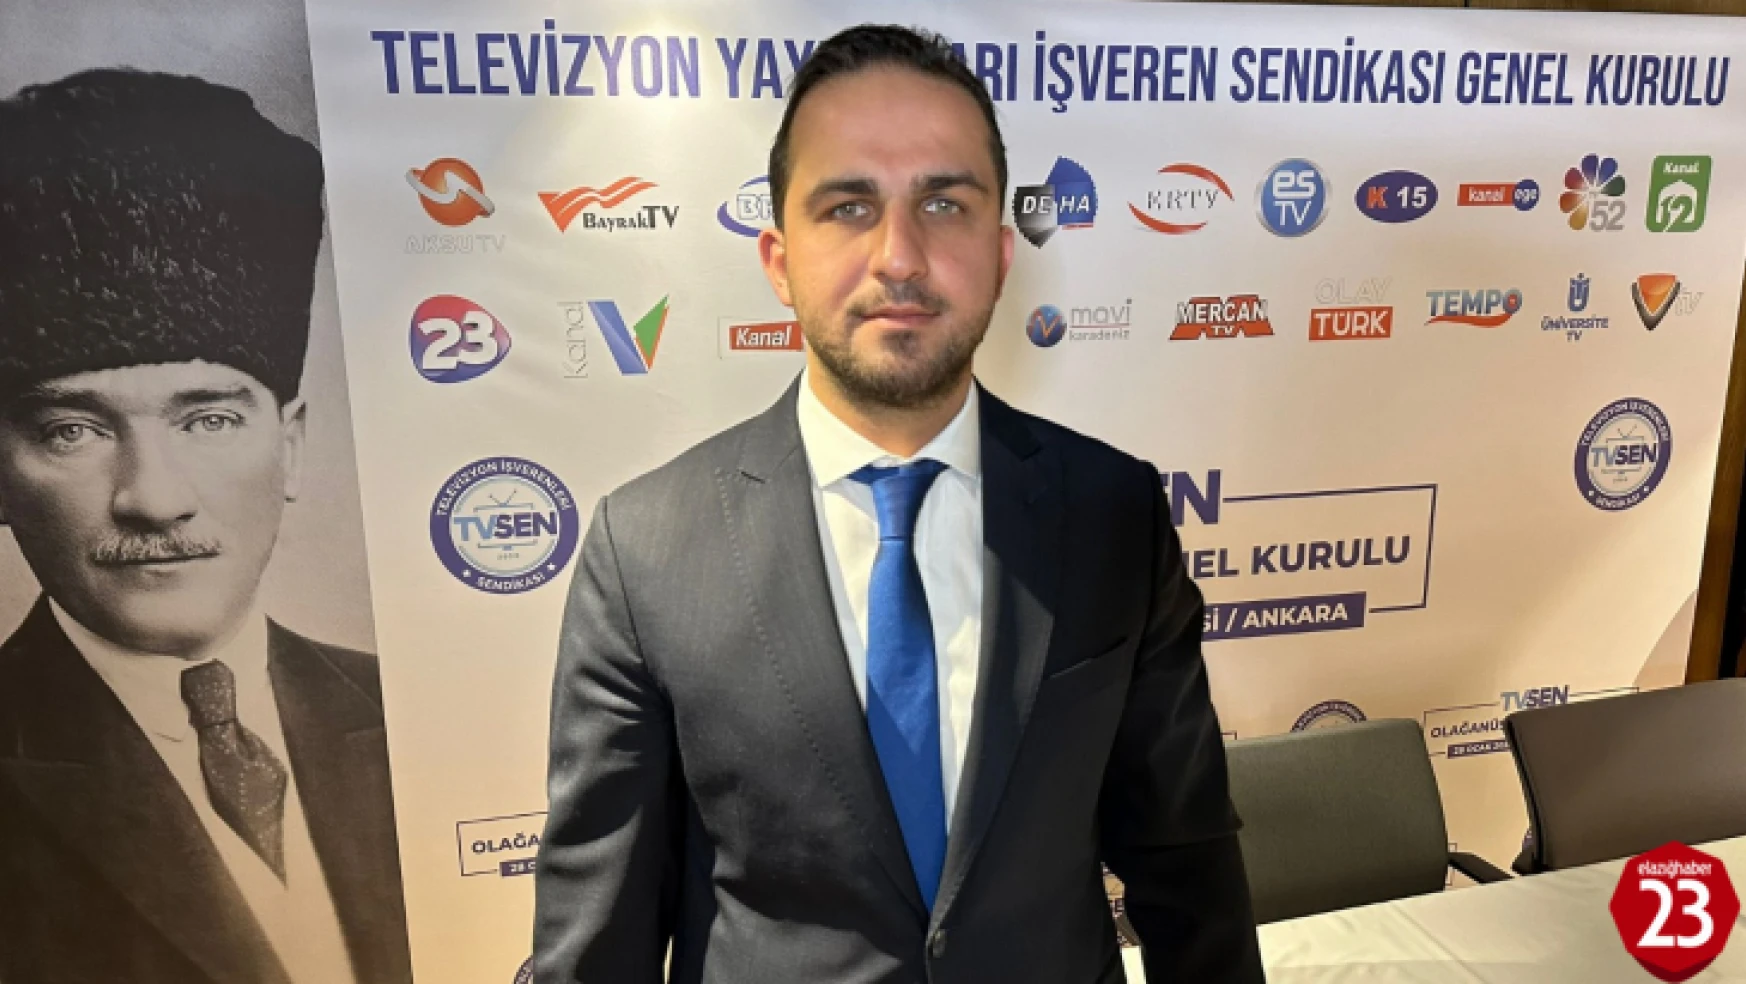 TV SEN Genel Başkanlığına Yunus Evliyaoğlu Seçildi